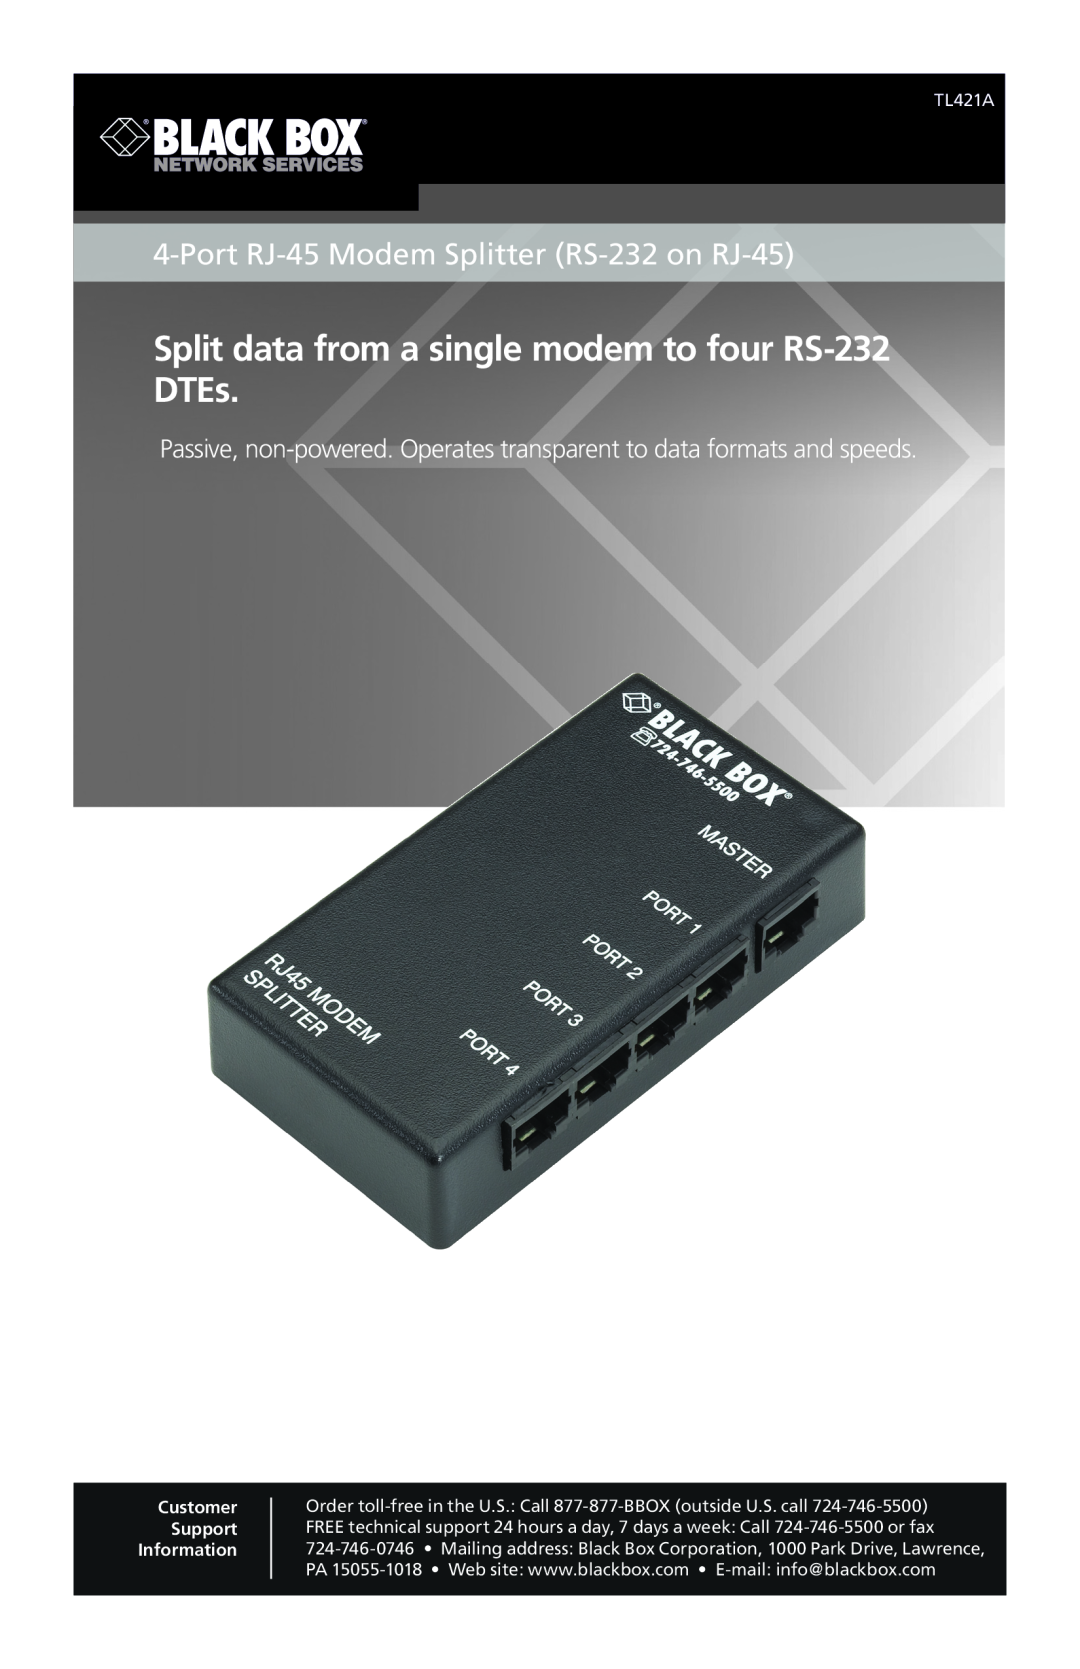 Black Box 4-Port RJ-45 Modem Splitter (RS-232 on RJ-45) manual Port RJ-45 Modem Splitter RS-232 on RJ-45, TL421A 